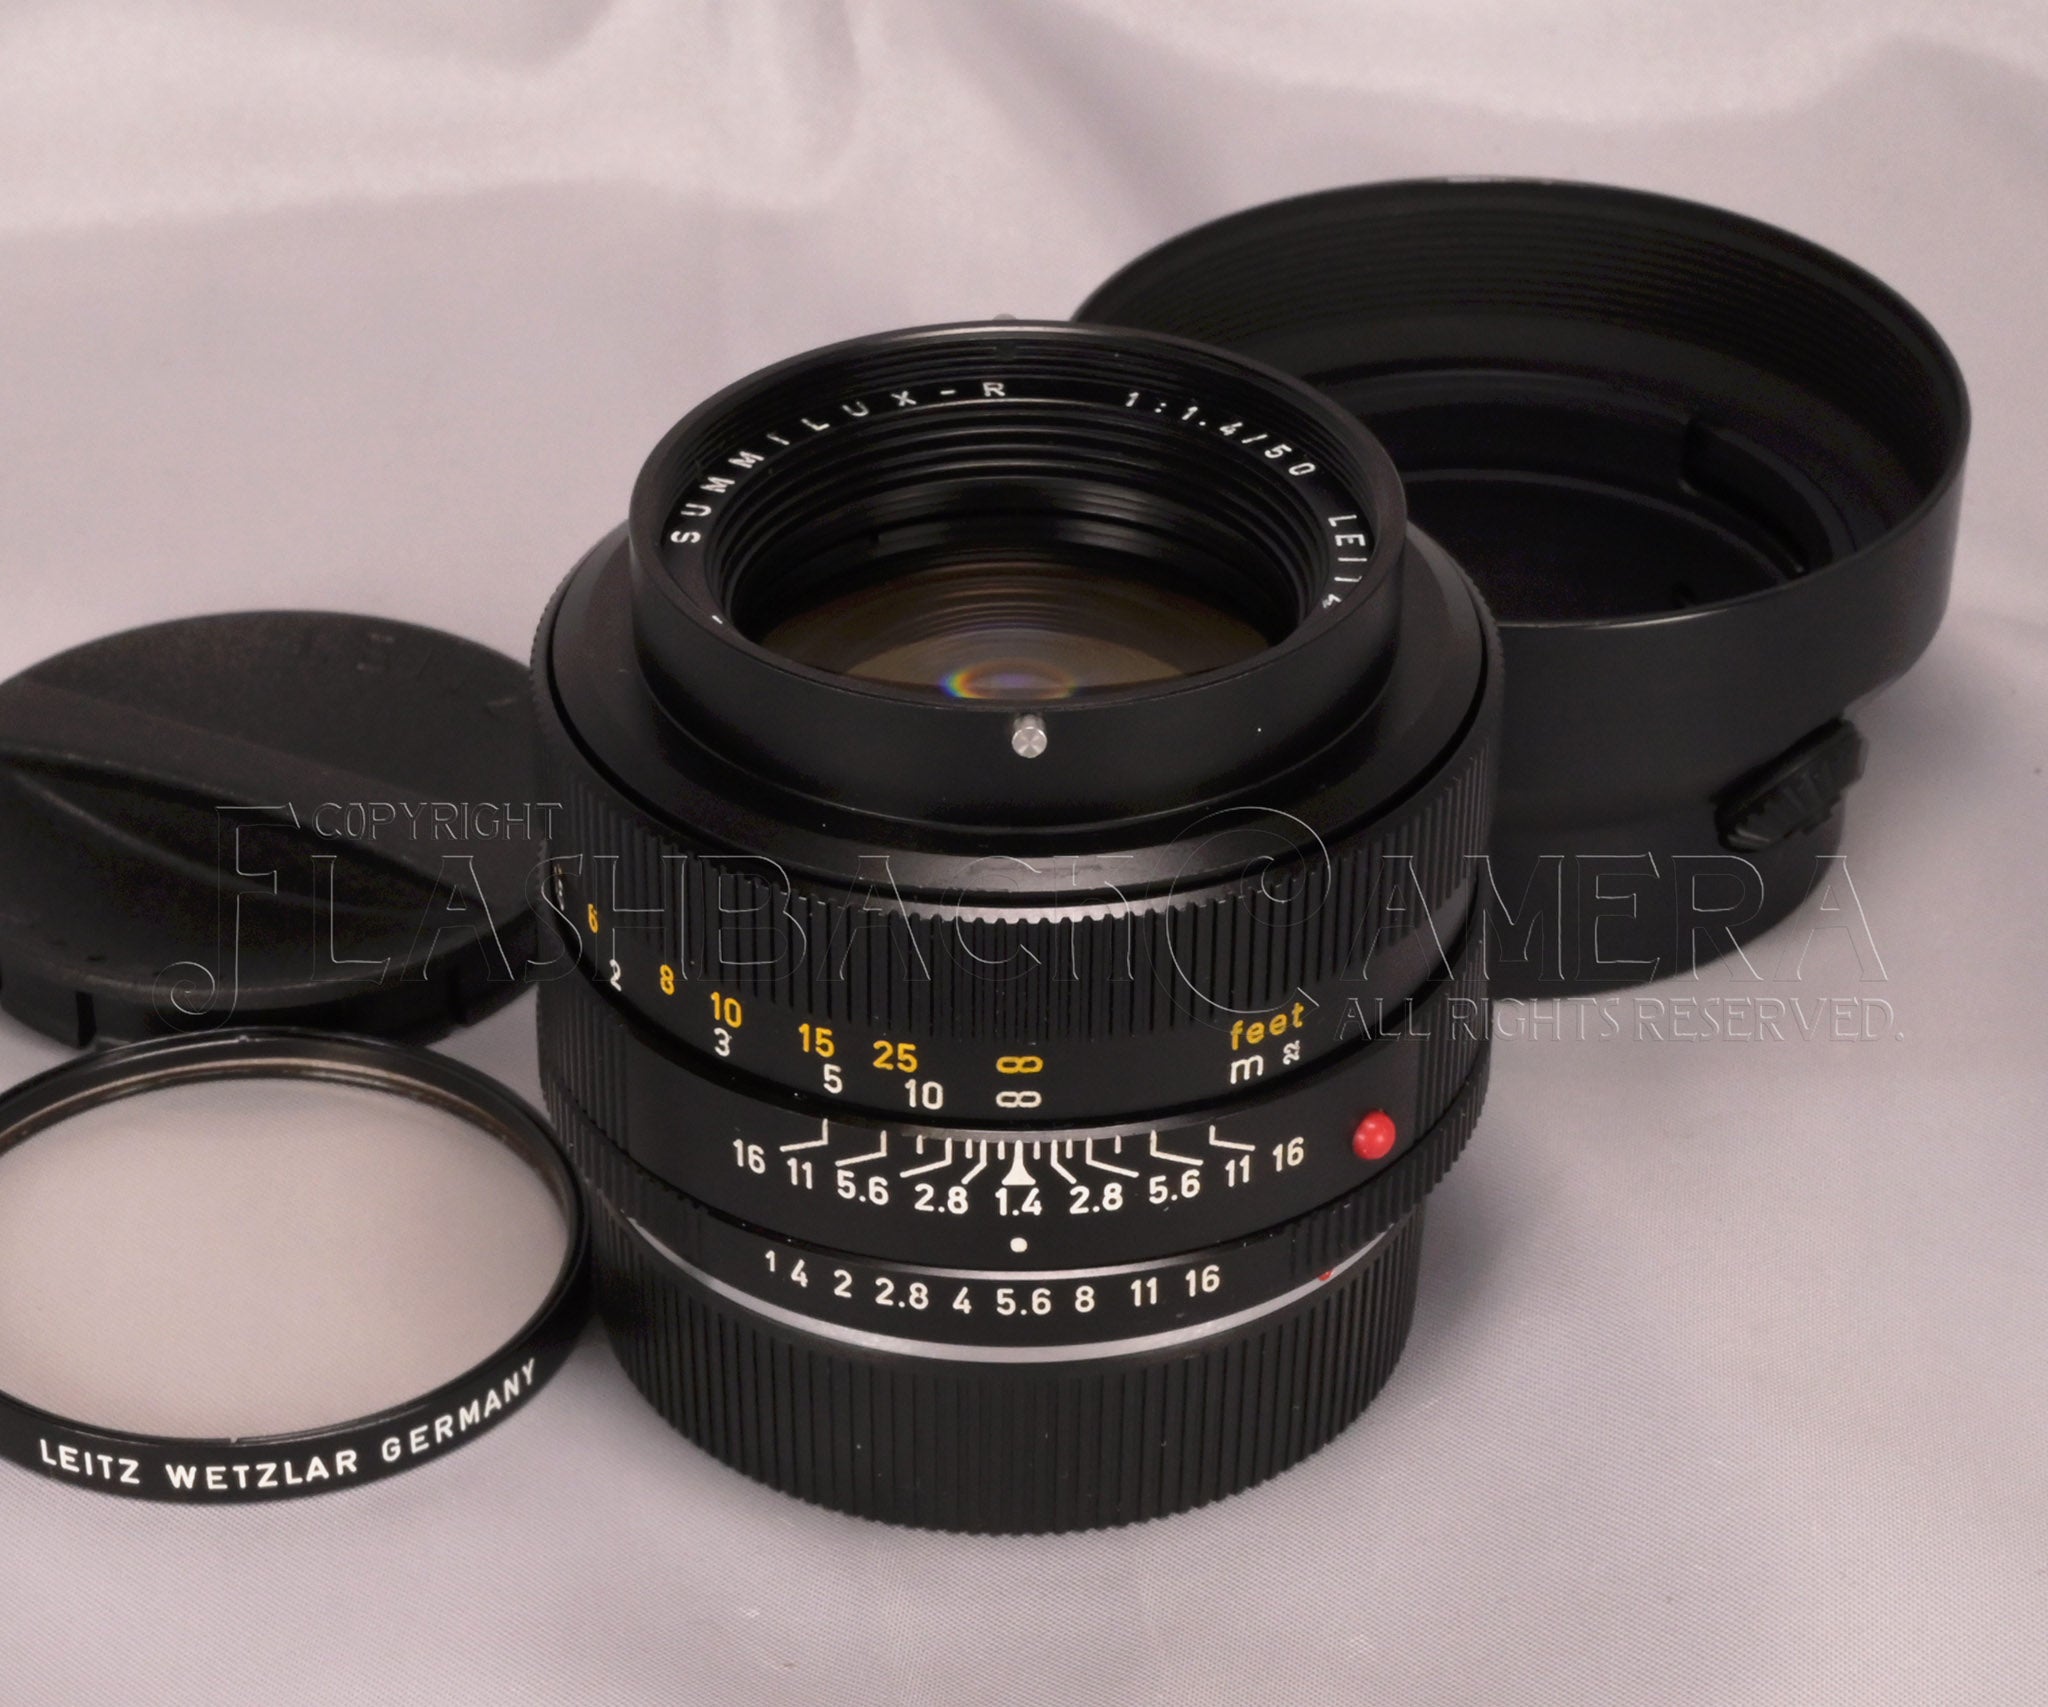 40500円 Summilux-R 50mm f1.4 (3 cam)レンズ(単焦点)